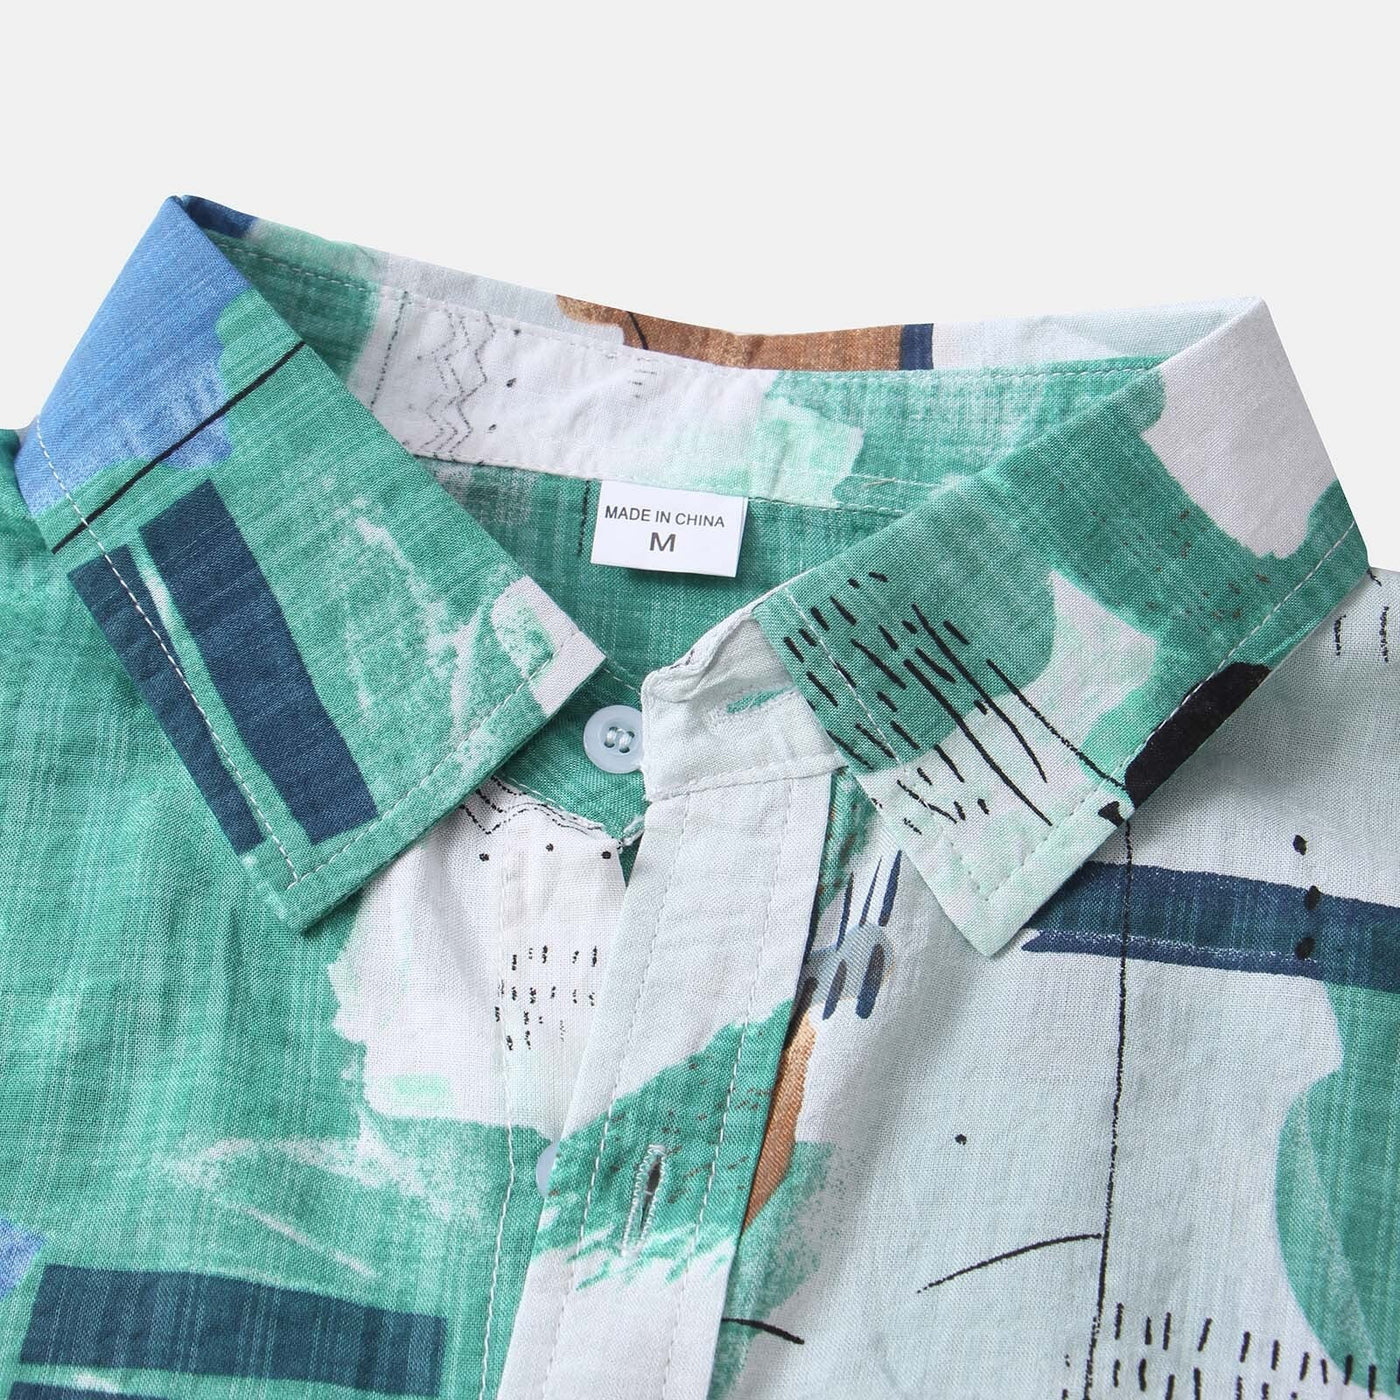 Rostro - Casual skjorte med korte ærmer og abstrakt print